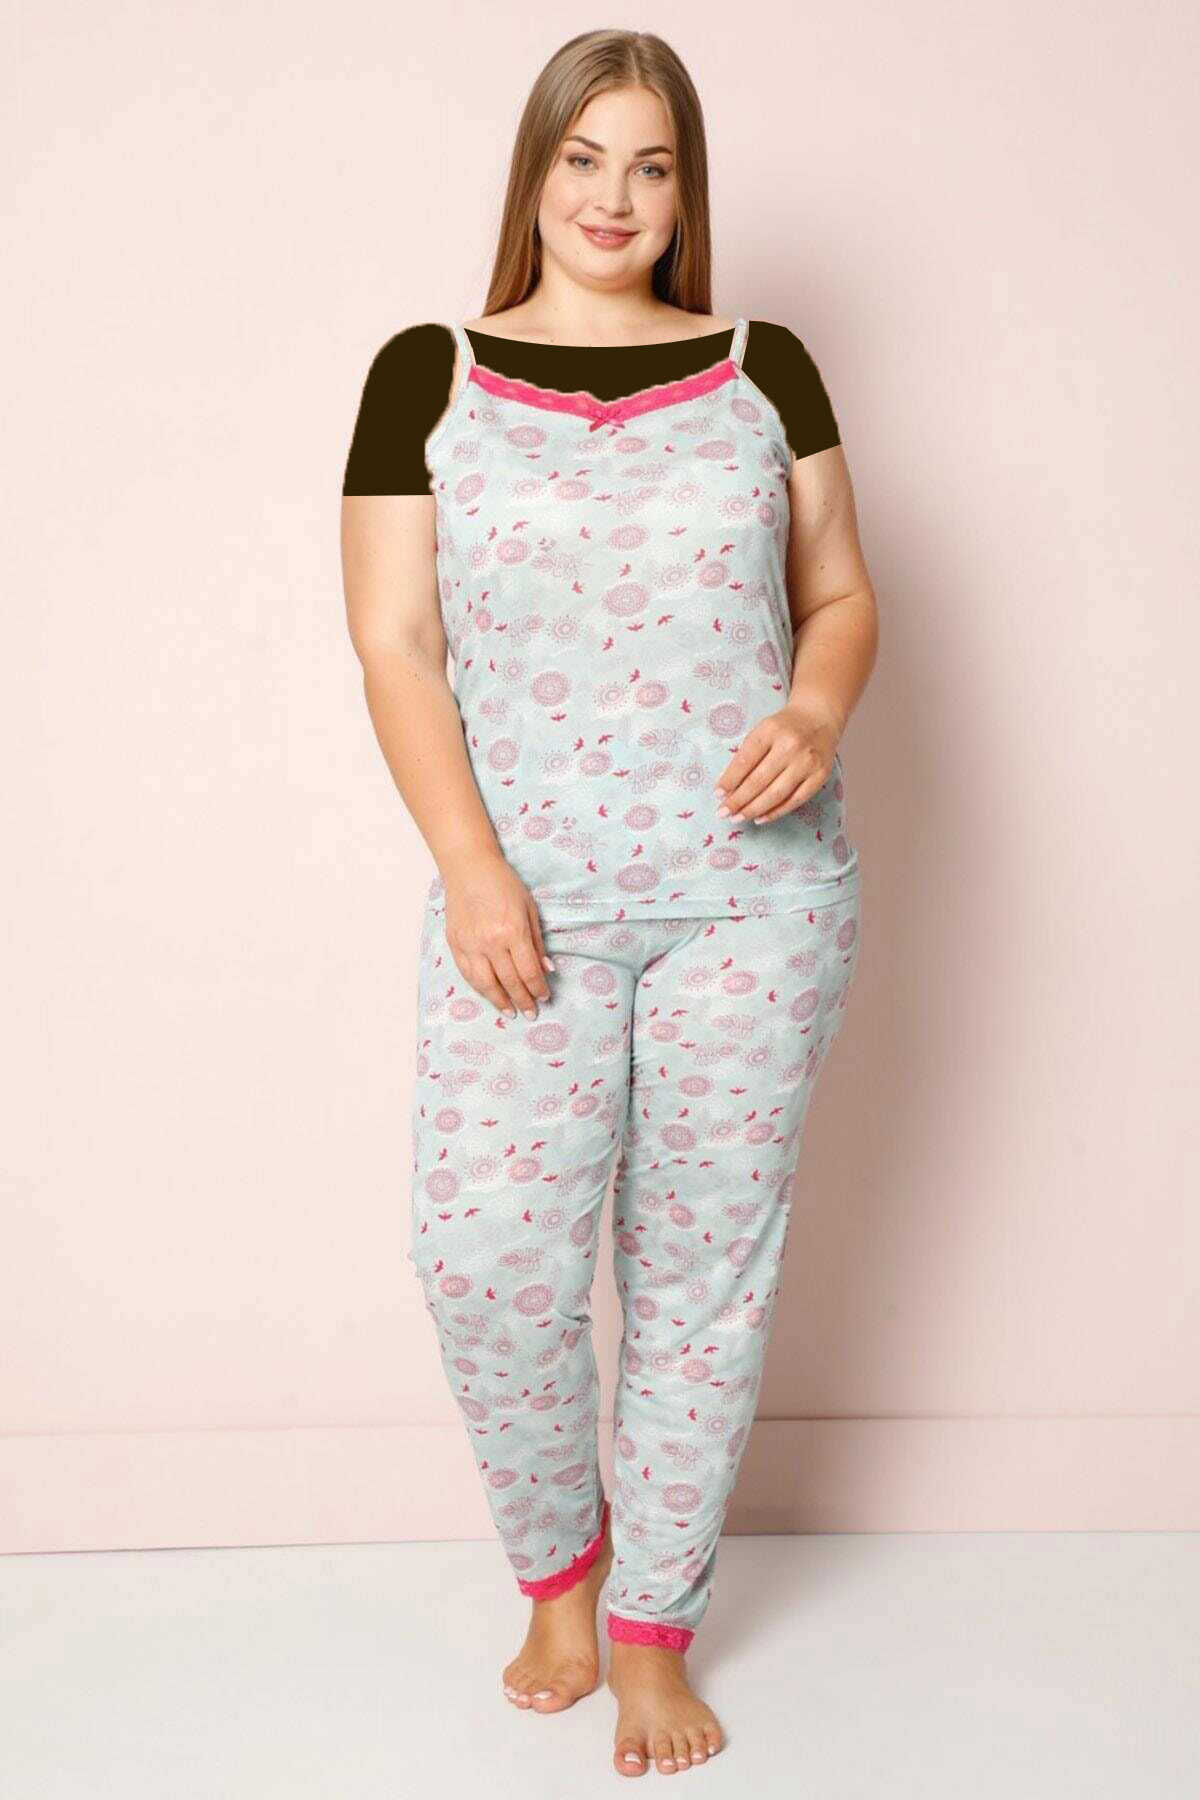 ست پیژامه تاپ بند دار شلوار طرح دار سایز بزرگ زنانه دو رنگ طوسی سرخابی برند Pijamaevi 